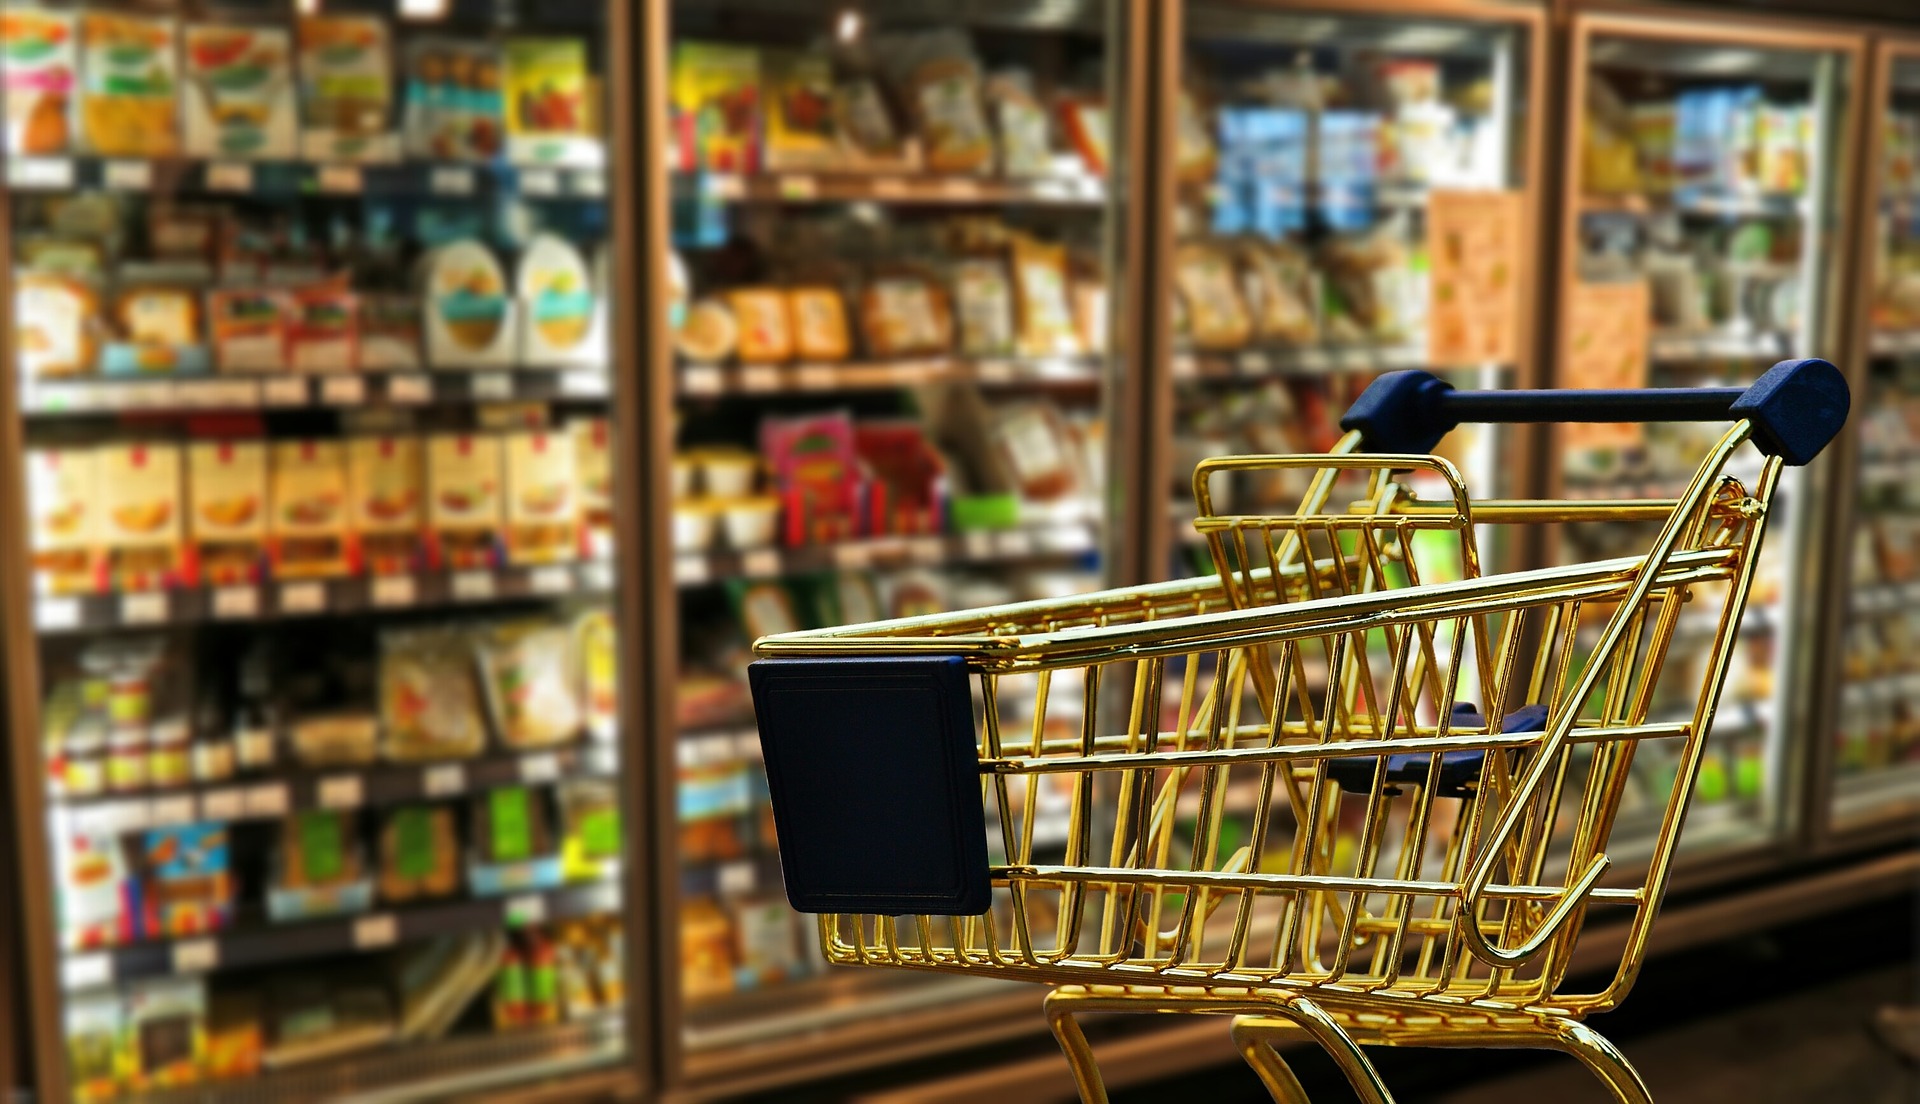 sanificazione ambientale dei supermercati - carrello dentro a supermercato